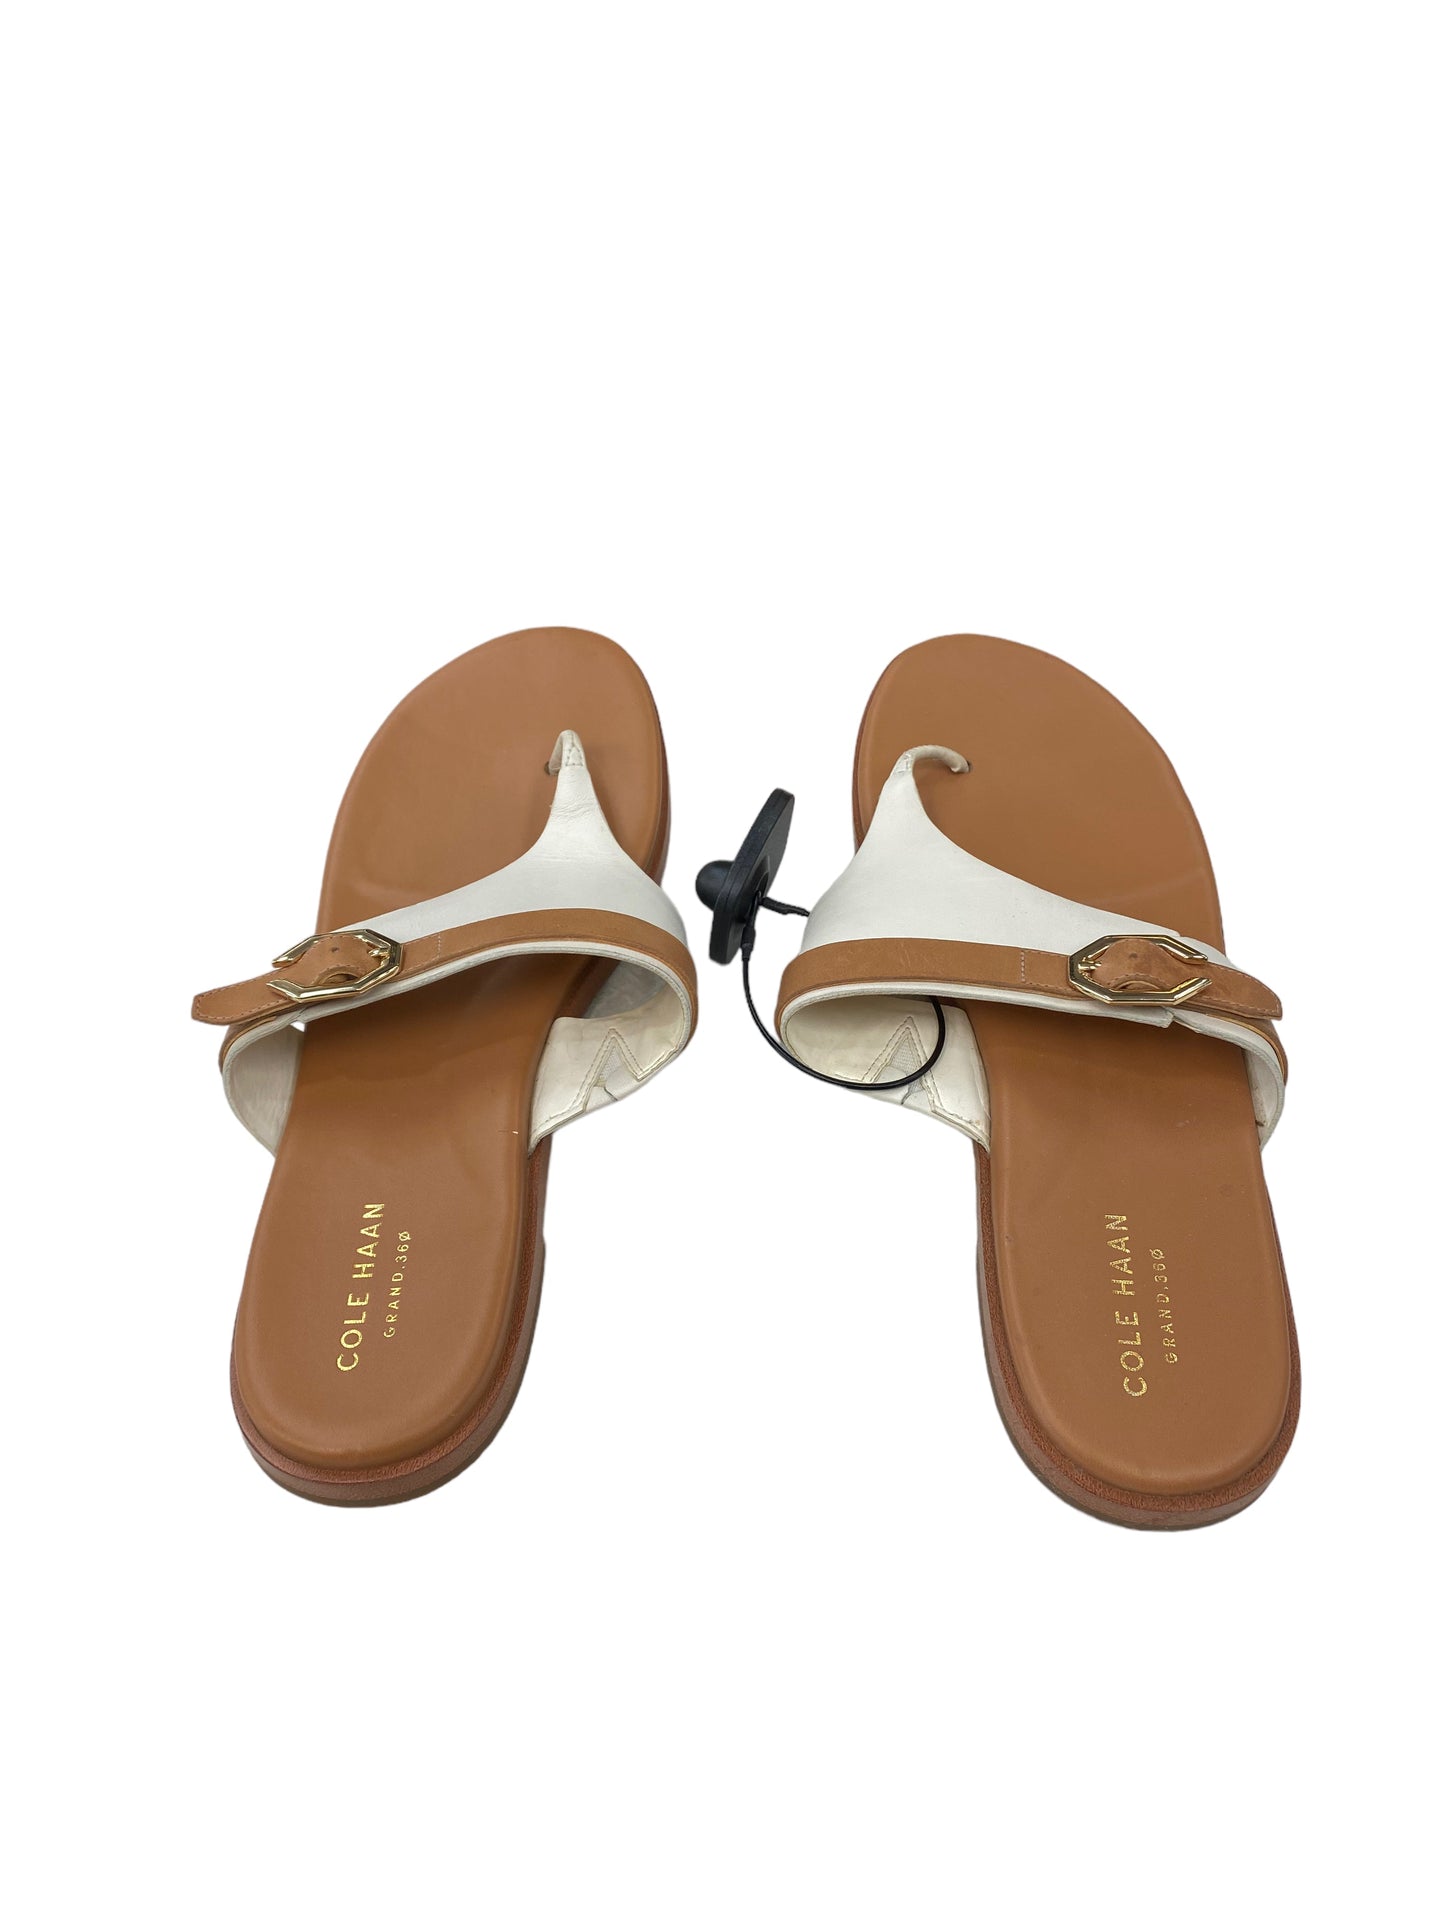 Beige Sandals Flip Flops Cole-haan, Size 9